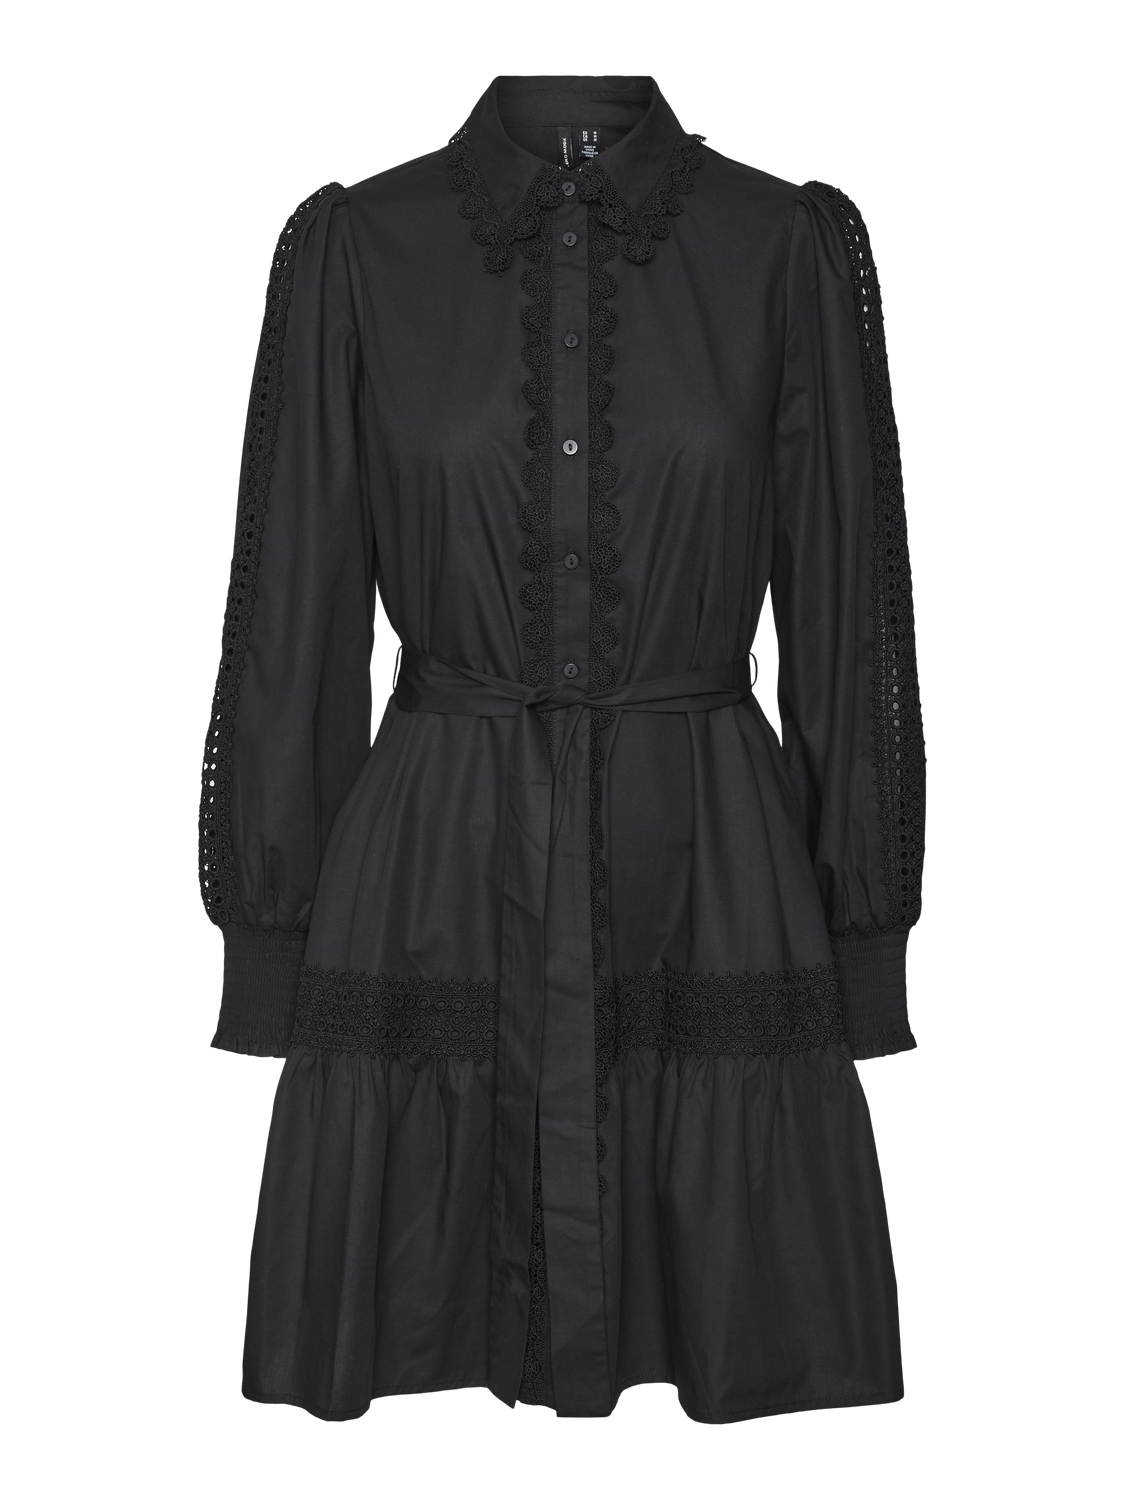 VMRACHEL Dress - Black